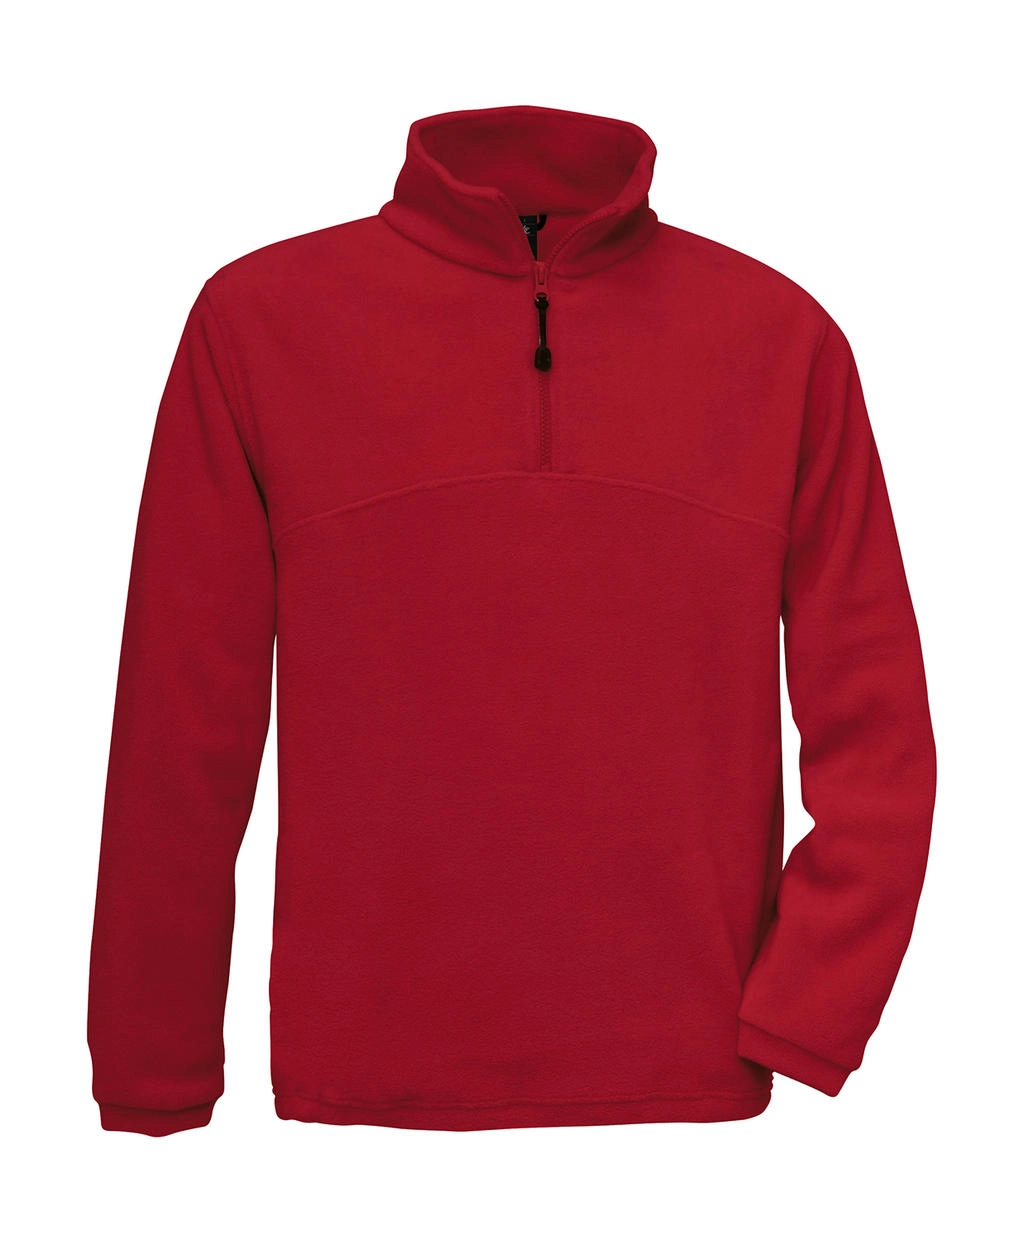 Highlander+ 1/4 Zip Fleece Top zum Besticken und Bedrucken in der Farbe Red mit Ihren Logo, Schriftzug oder Motiv.